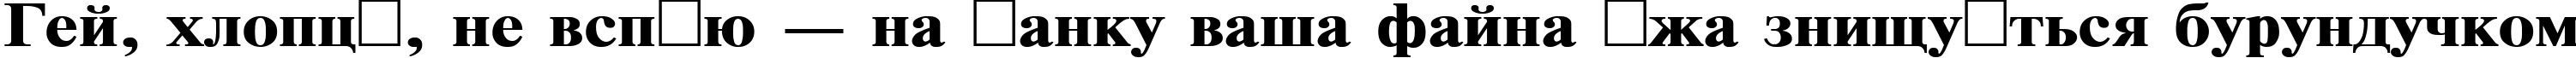 Пример написания шрифтом TimesET120b текста на украинском